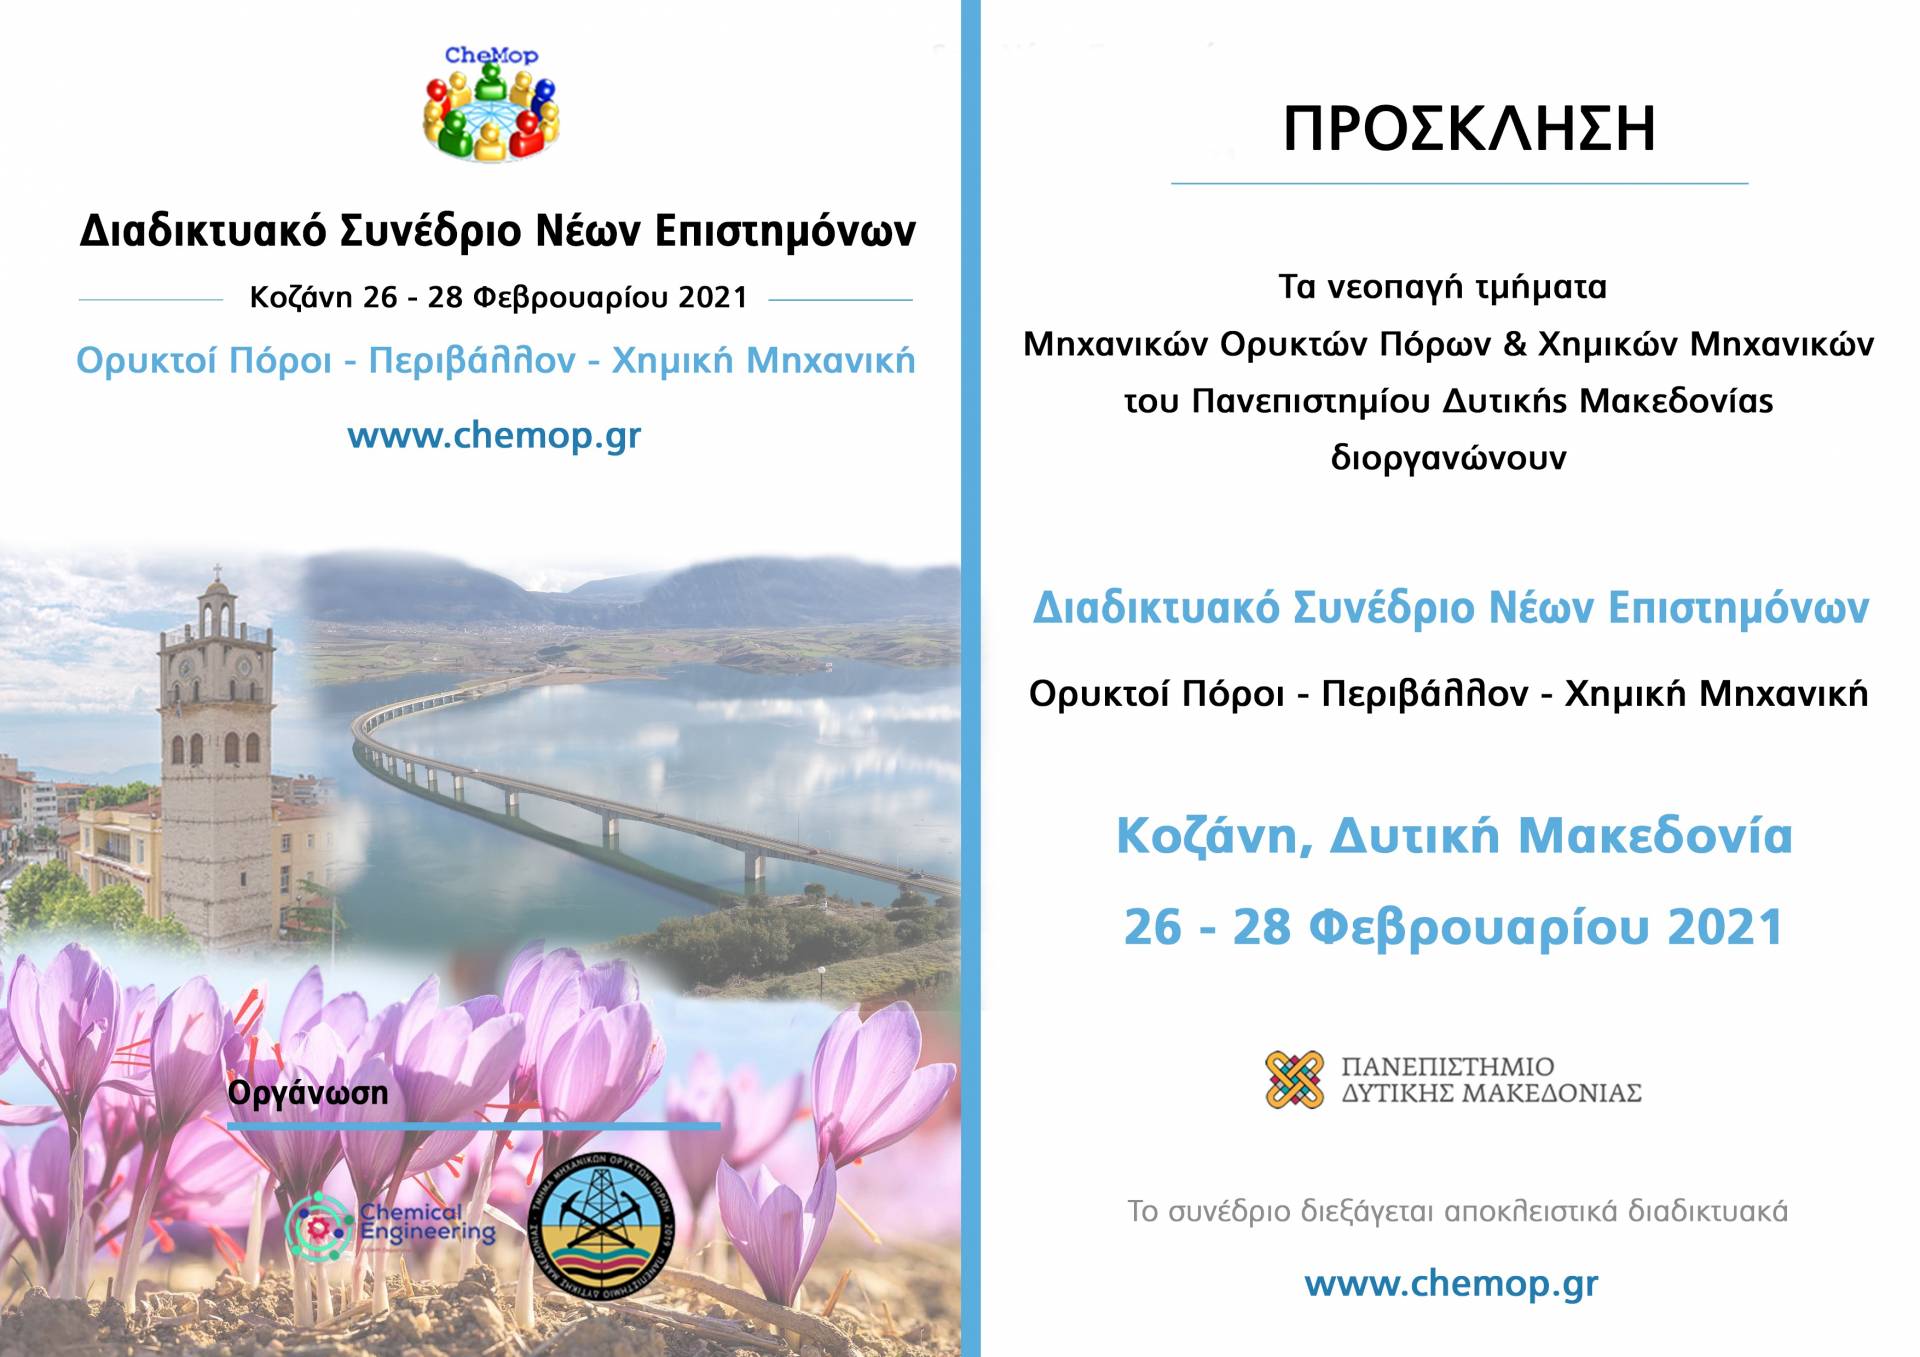 Πανεπιστήμιο Δυτικής Μακεδονίας: 1ο Διαδικτυακό Συνέδριο Νέων Επιστημόνων «Ορυκτοί Πόροι-Περιβάλλον- Χημική Μηχανική»